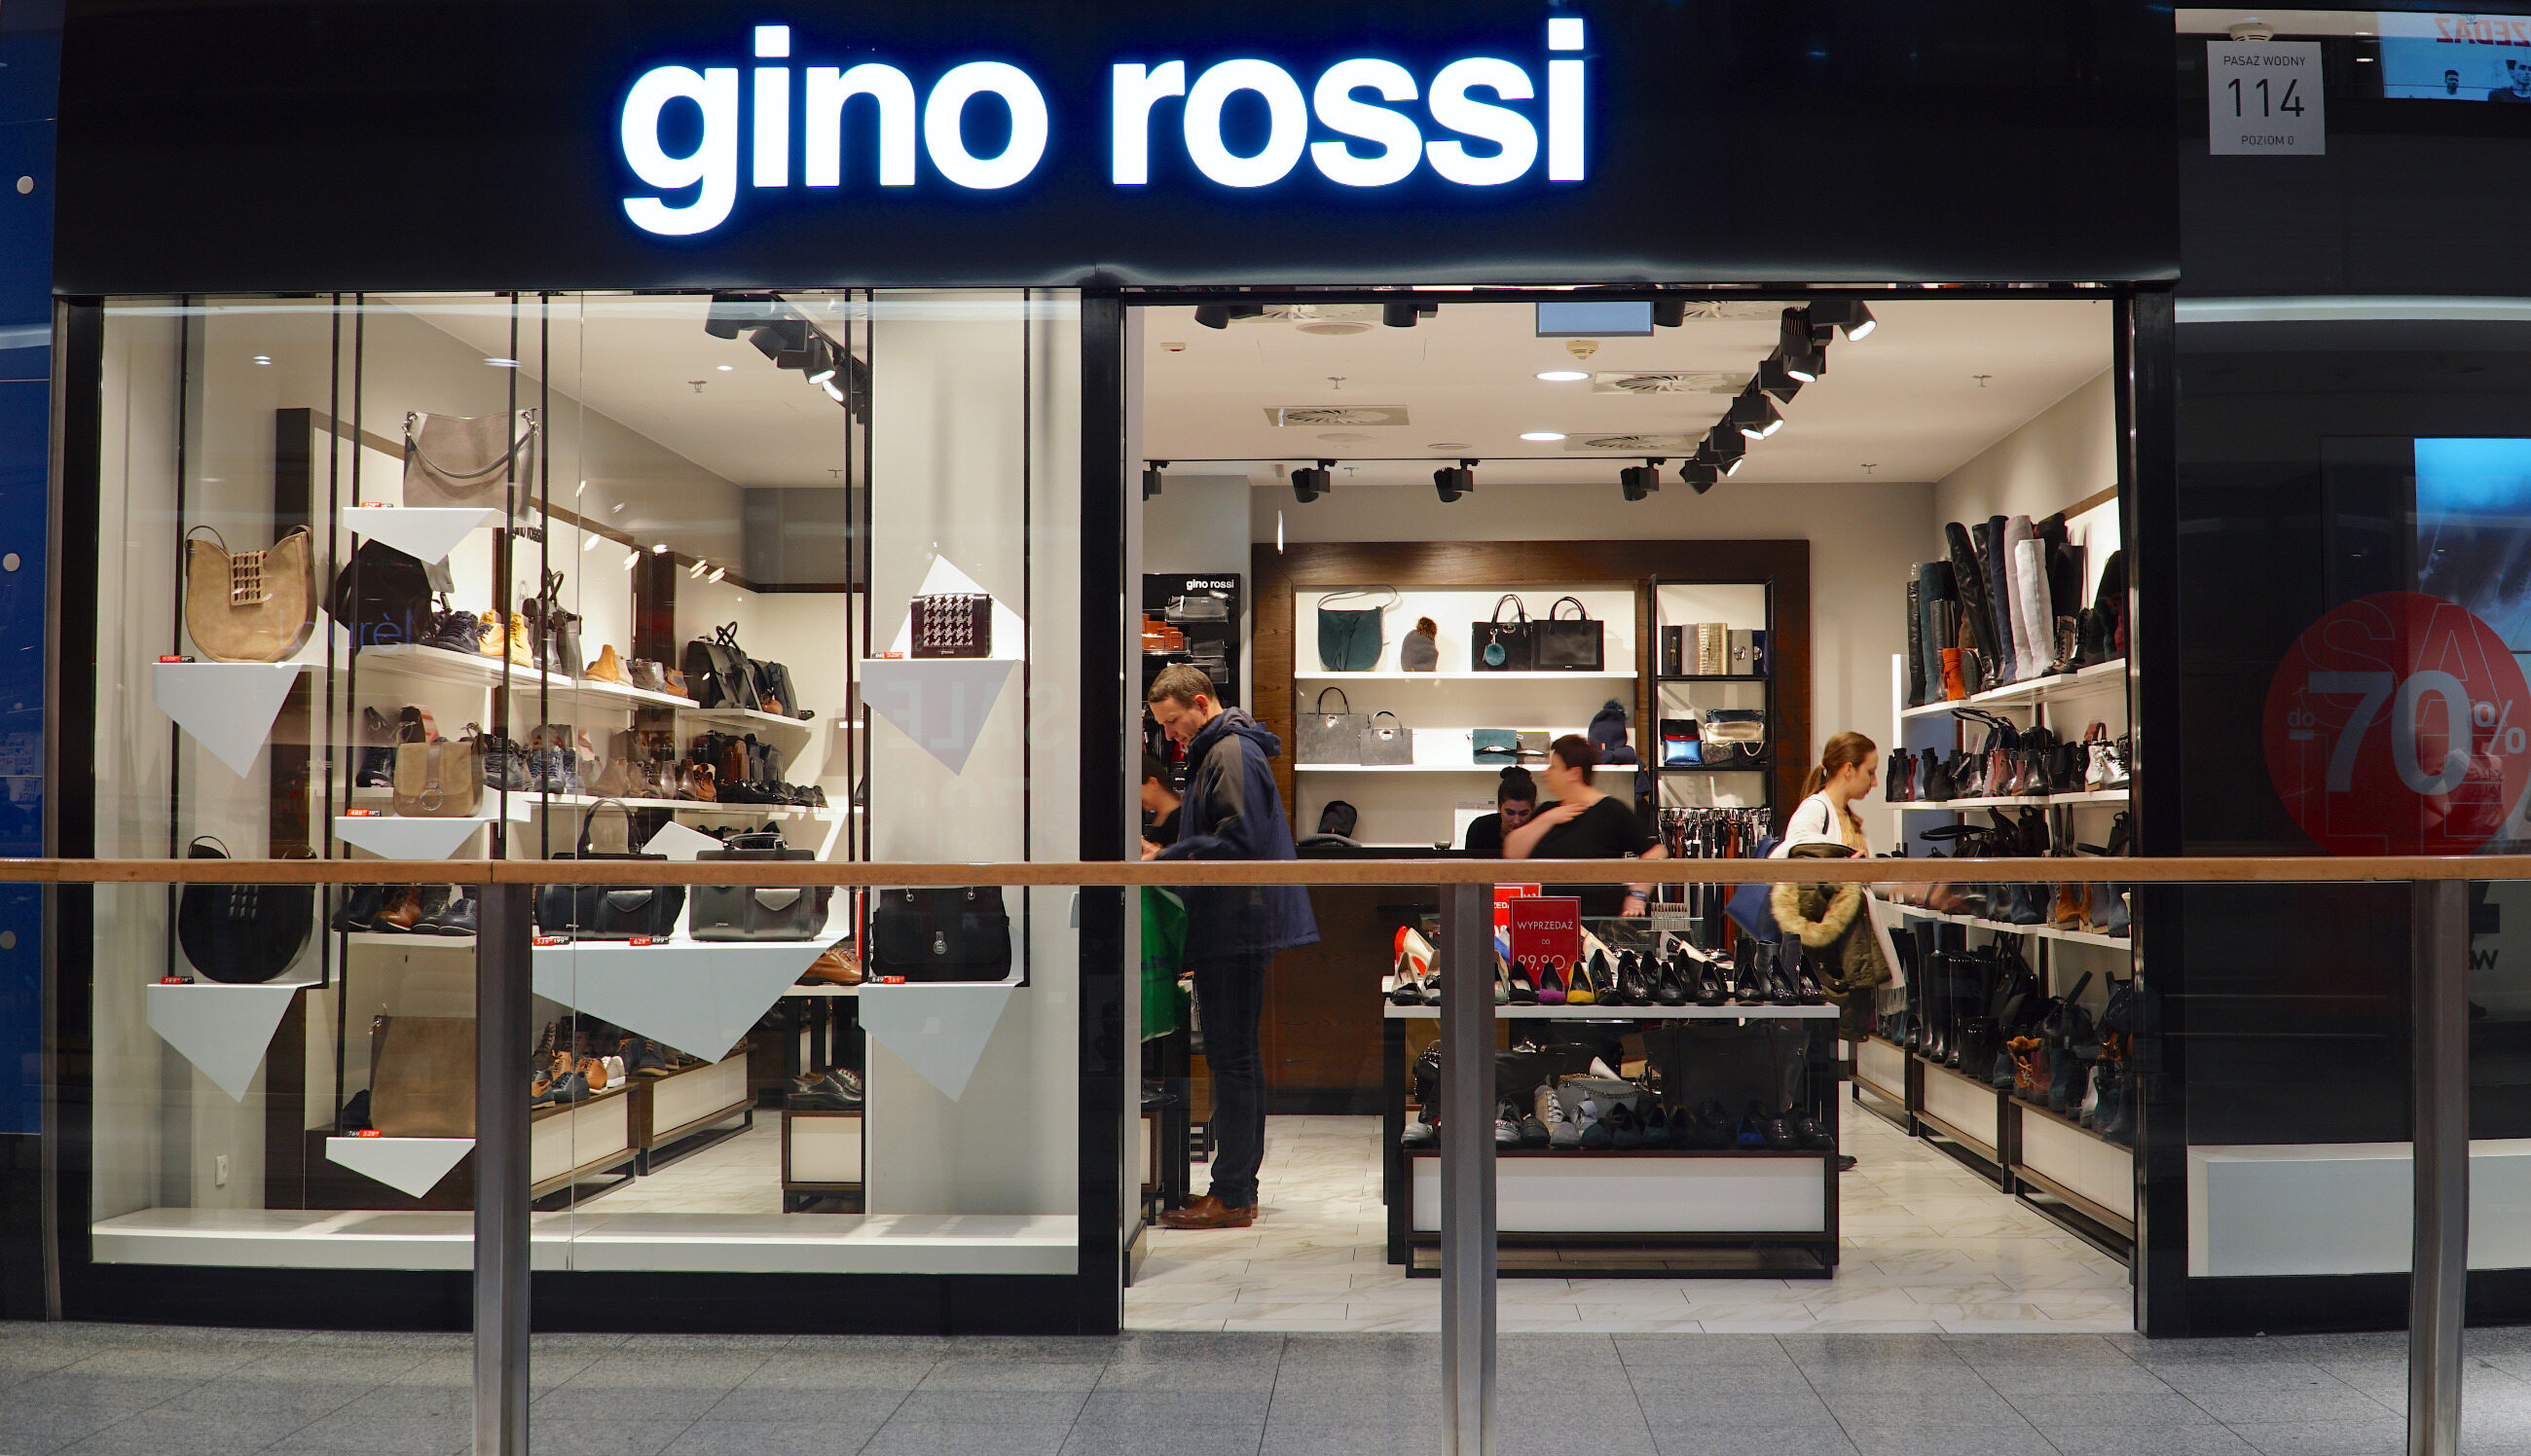 Gino Rossi zamyka sklepy stacjonarne - dlaczego, gdzie będzie można kupić buty? – Biznes Wprost